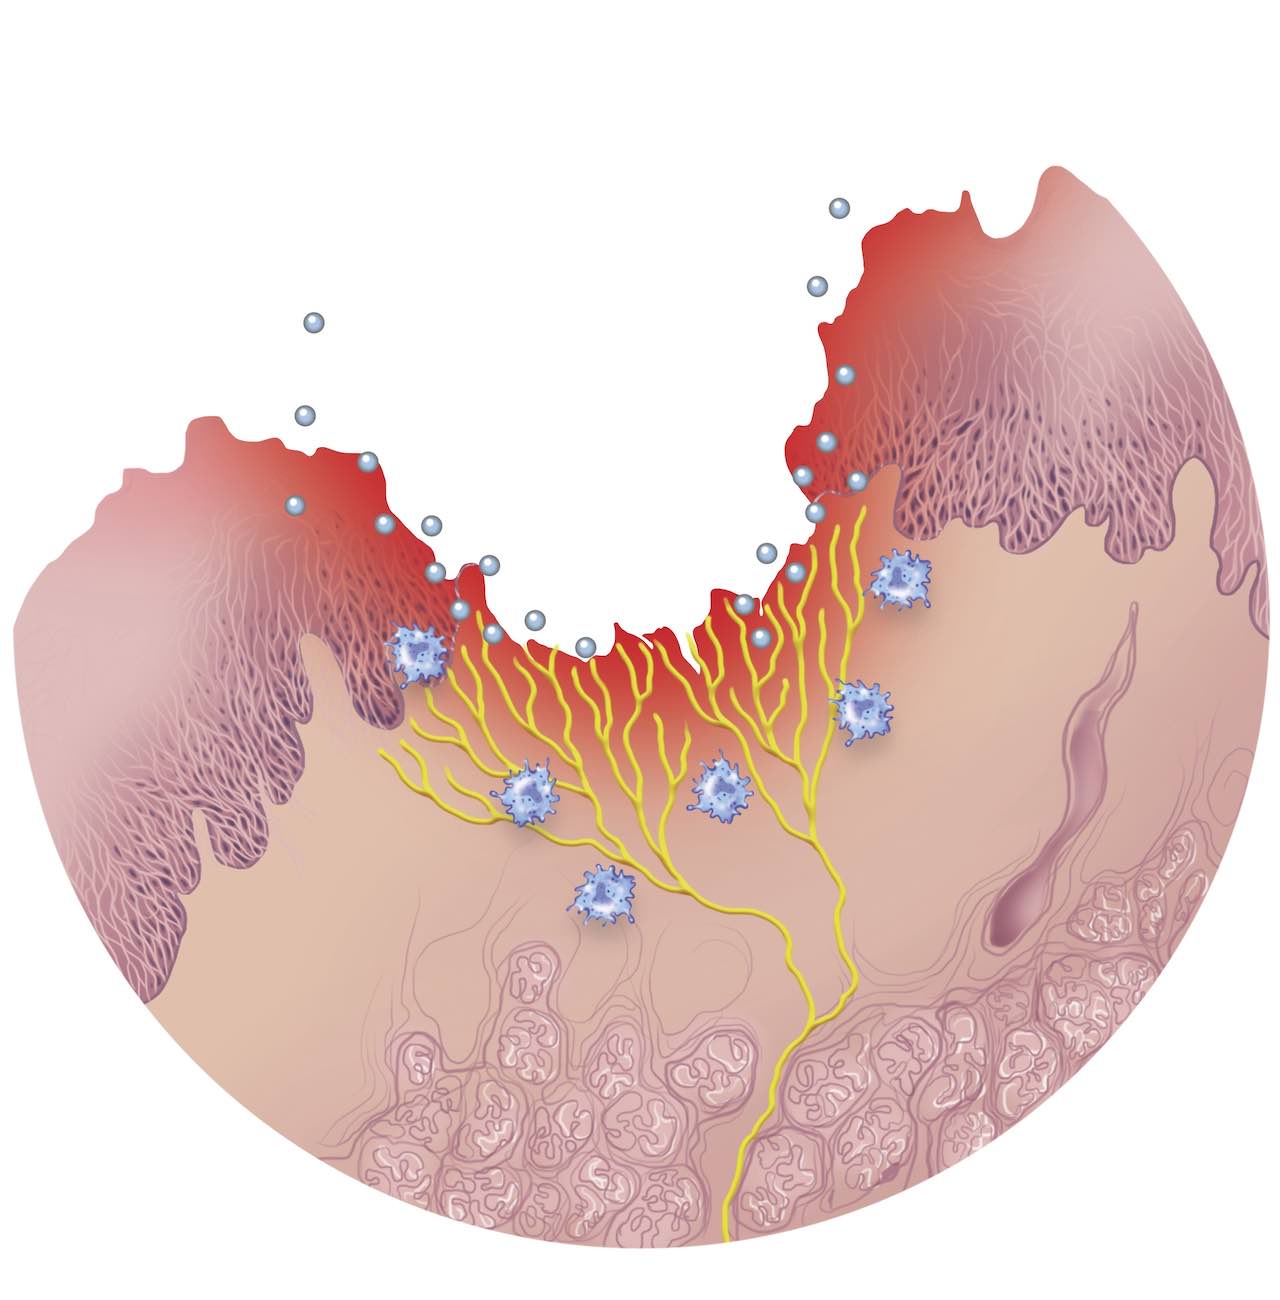 Schema geschädigter Schleimhaut mit intensiver Entzündungsreaktion, einwandernden Neutrophilen und Lymphozyten.